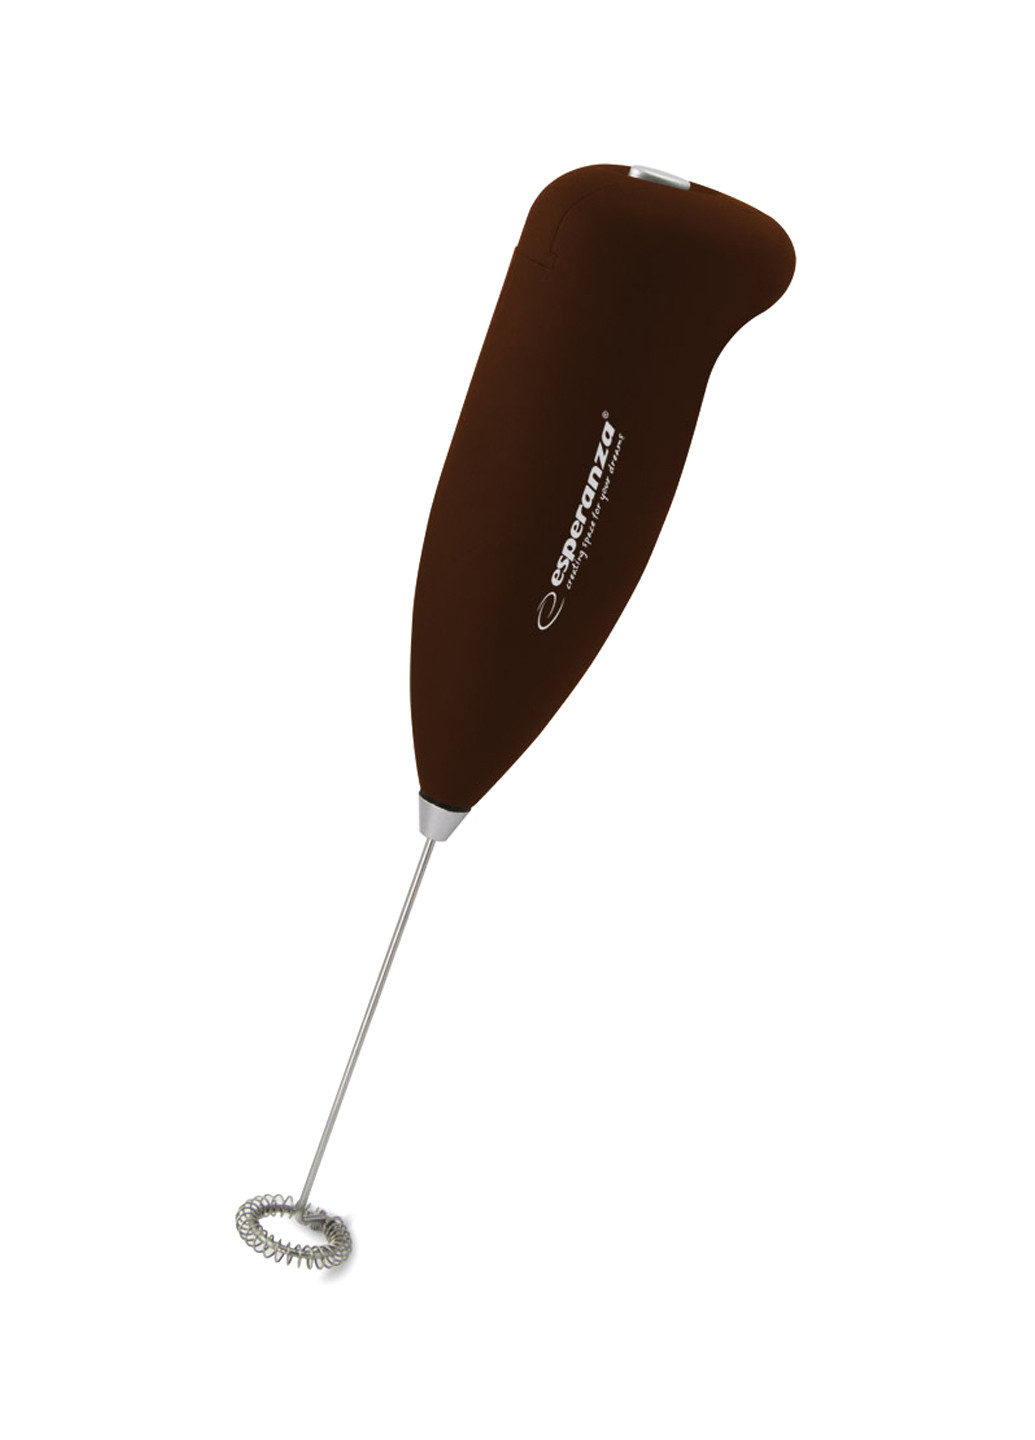 Піновзбивач коричневий Esperanza ekf001n (155045248)